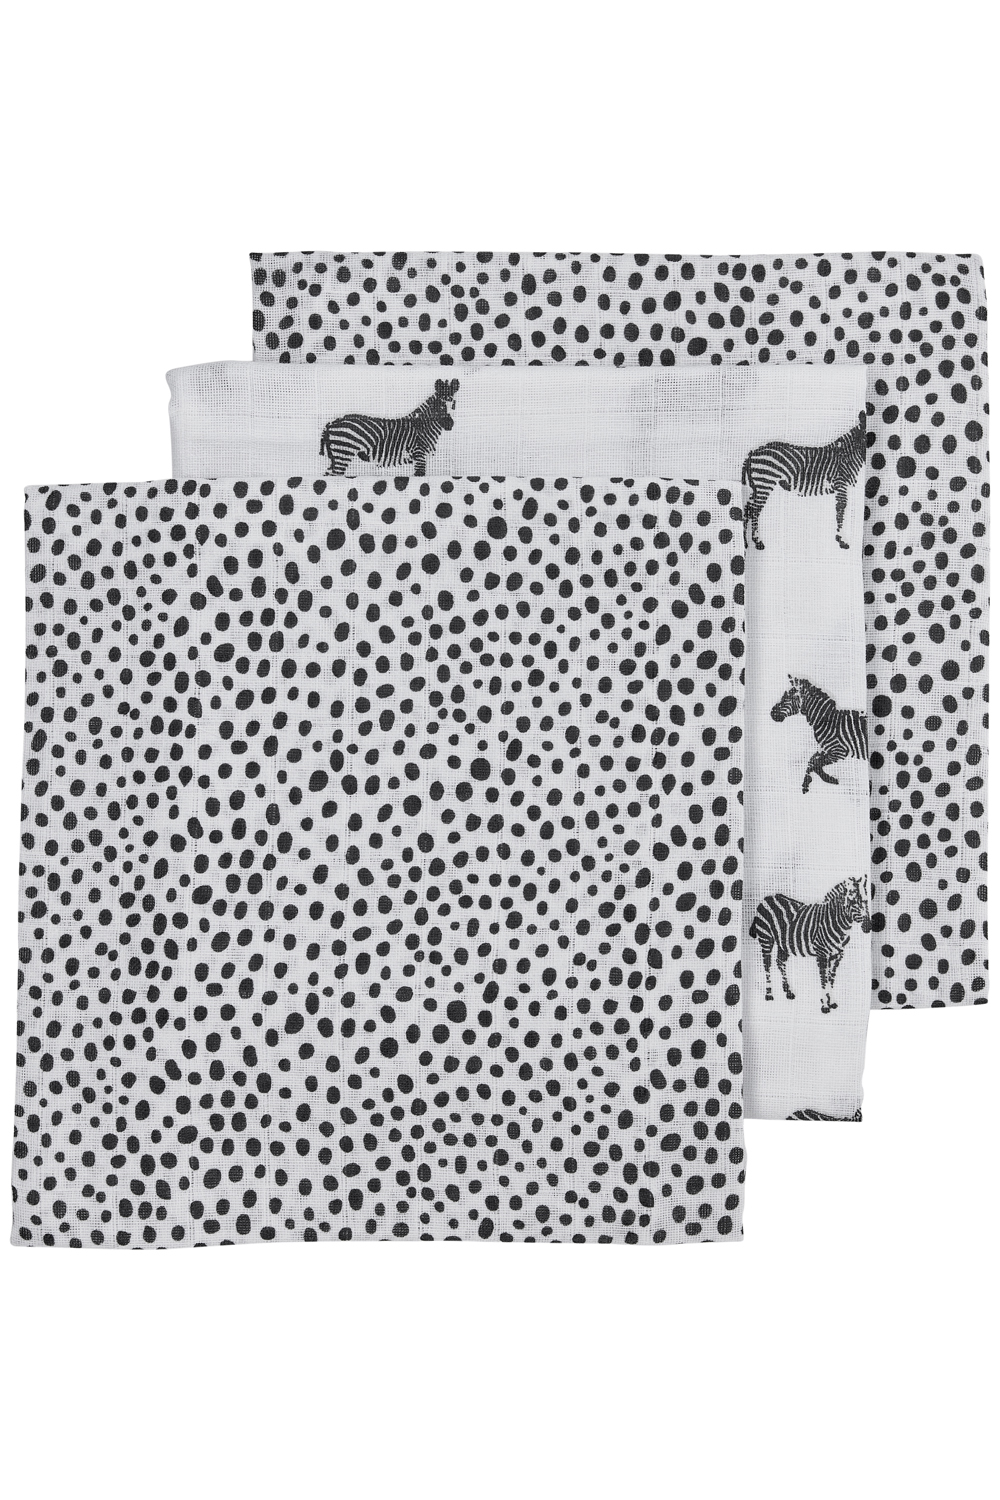 Square 3-pack Zebra Animal - black - 70x70cm